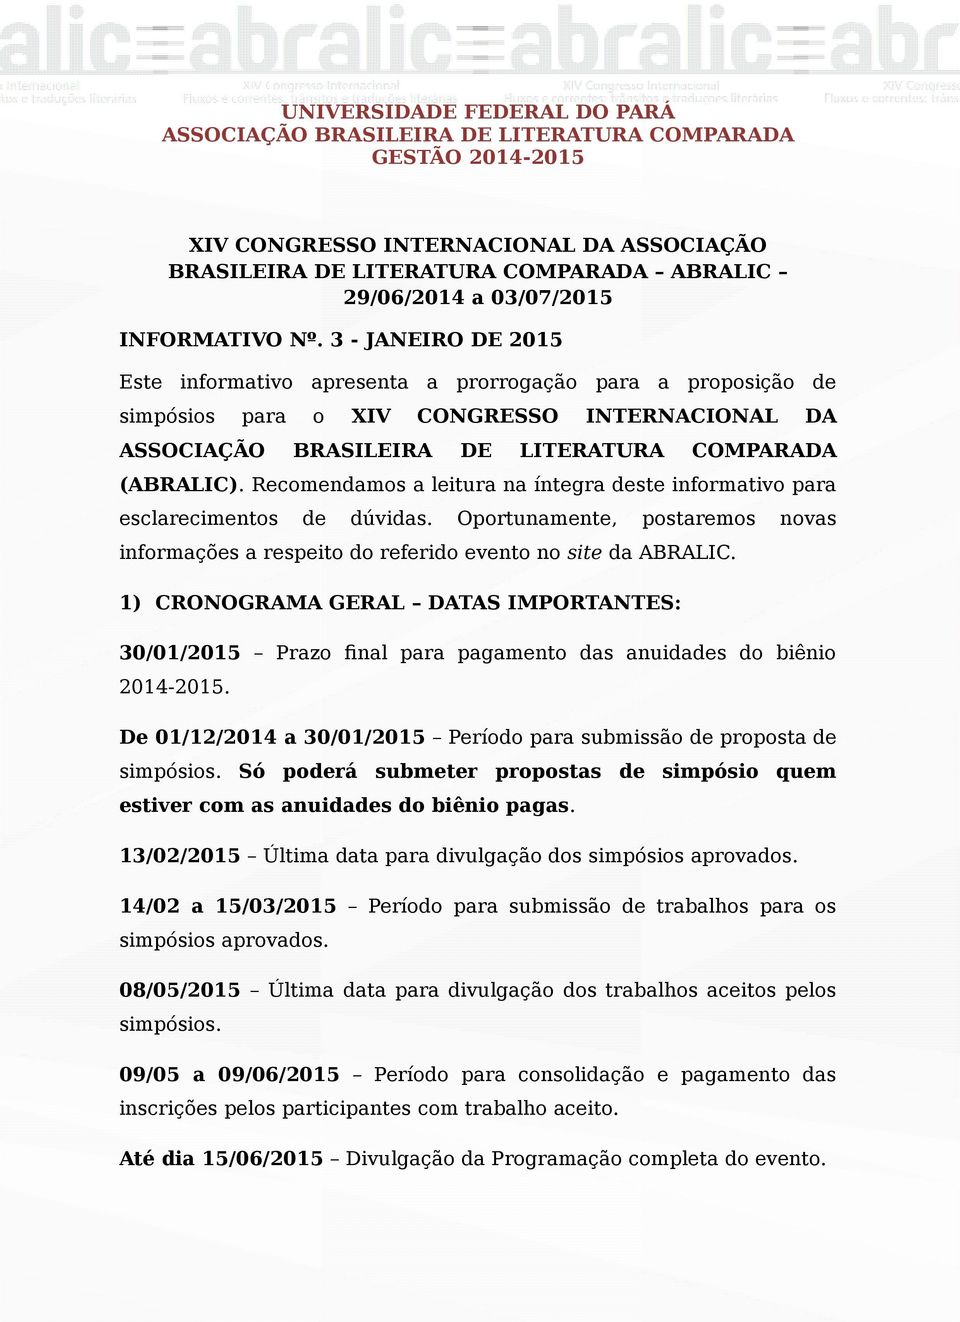 3 - JANEIRO DE 2015 Este informativo apresenta a prorrogação para a proposição de simpósios para ASSOCIAÇÃO o XIV CONGRESSO BRASILEIRA DE INTERNACIONAL LITERATURA DA COMPARADA (ABRALIC).